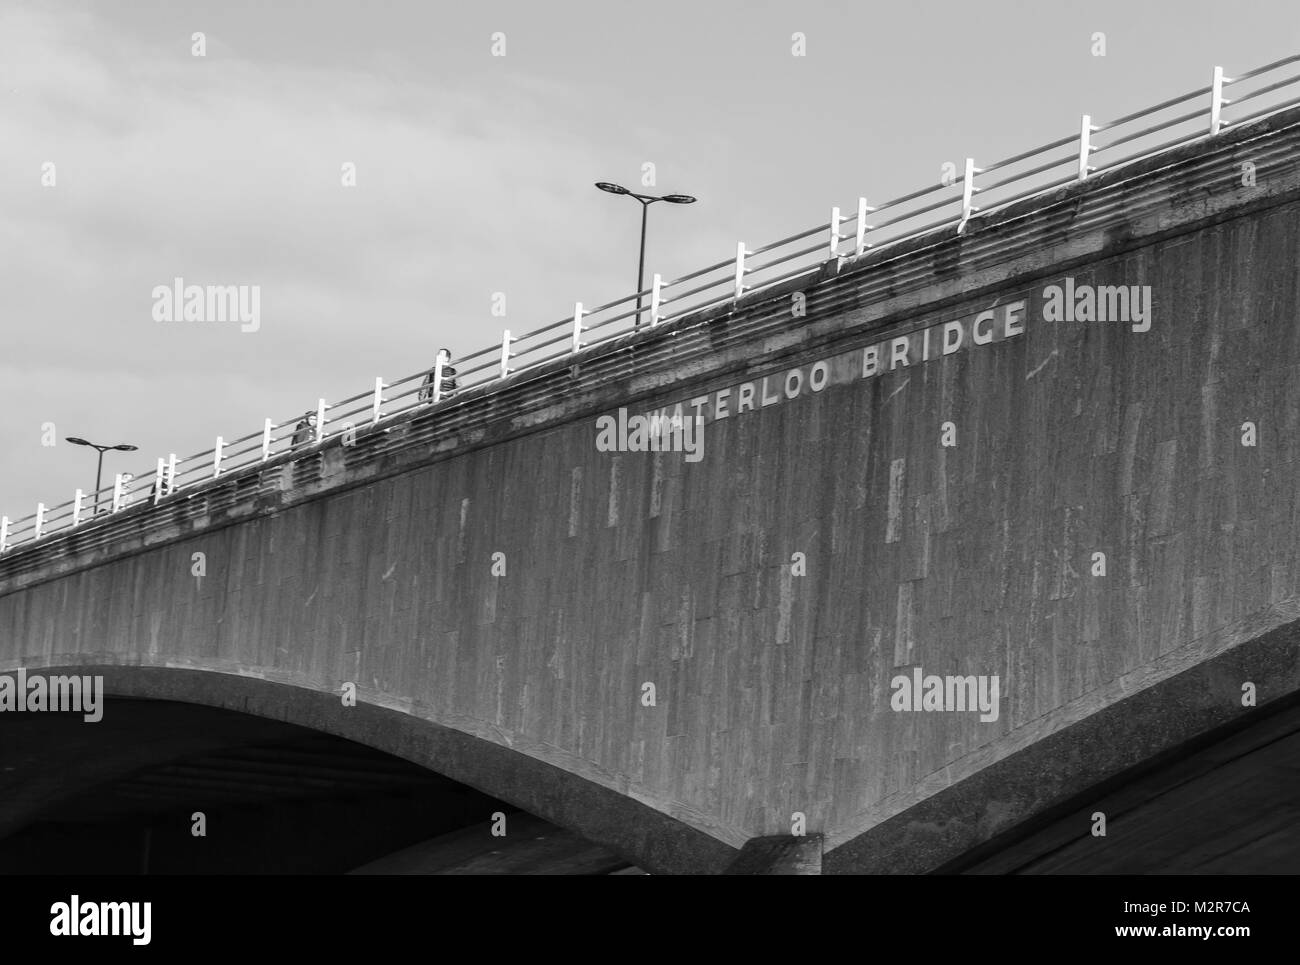 Waterloo Bridge - Beschreibung auf der berühmten Brücke s/w Stockfoto